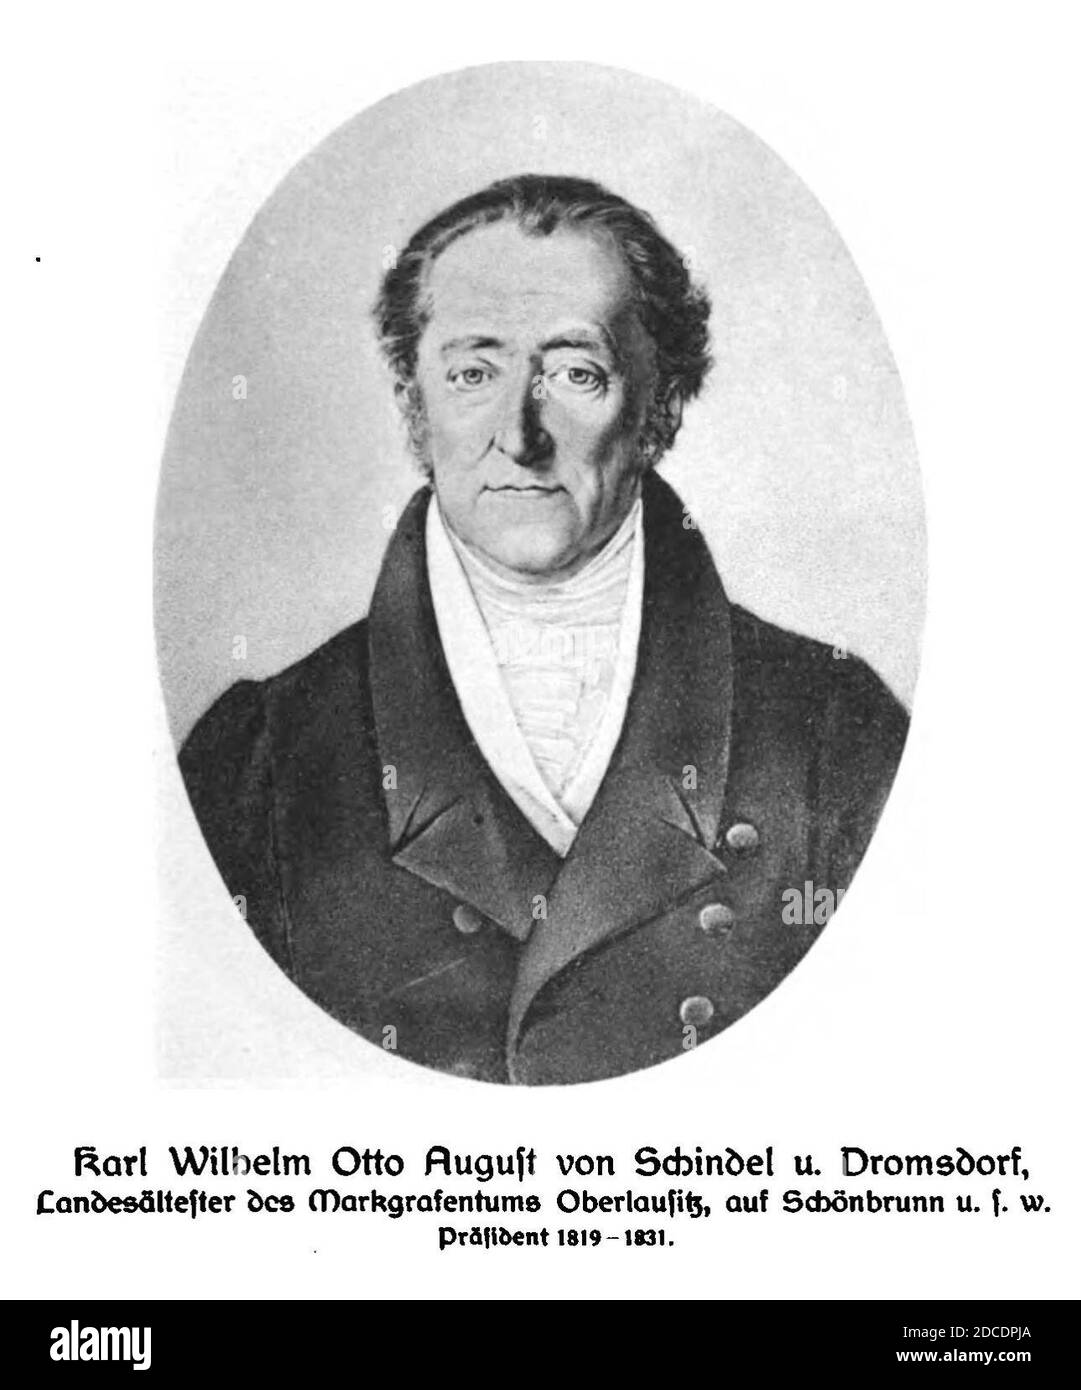 Karl Wilhelm Otto August von Schindel und Dromsdorf. Stock Photo